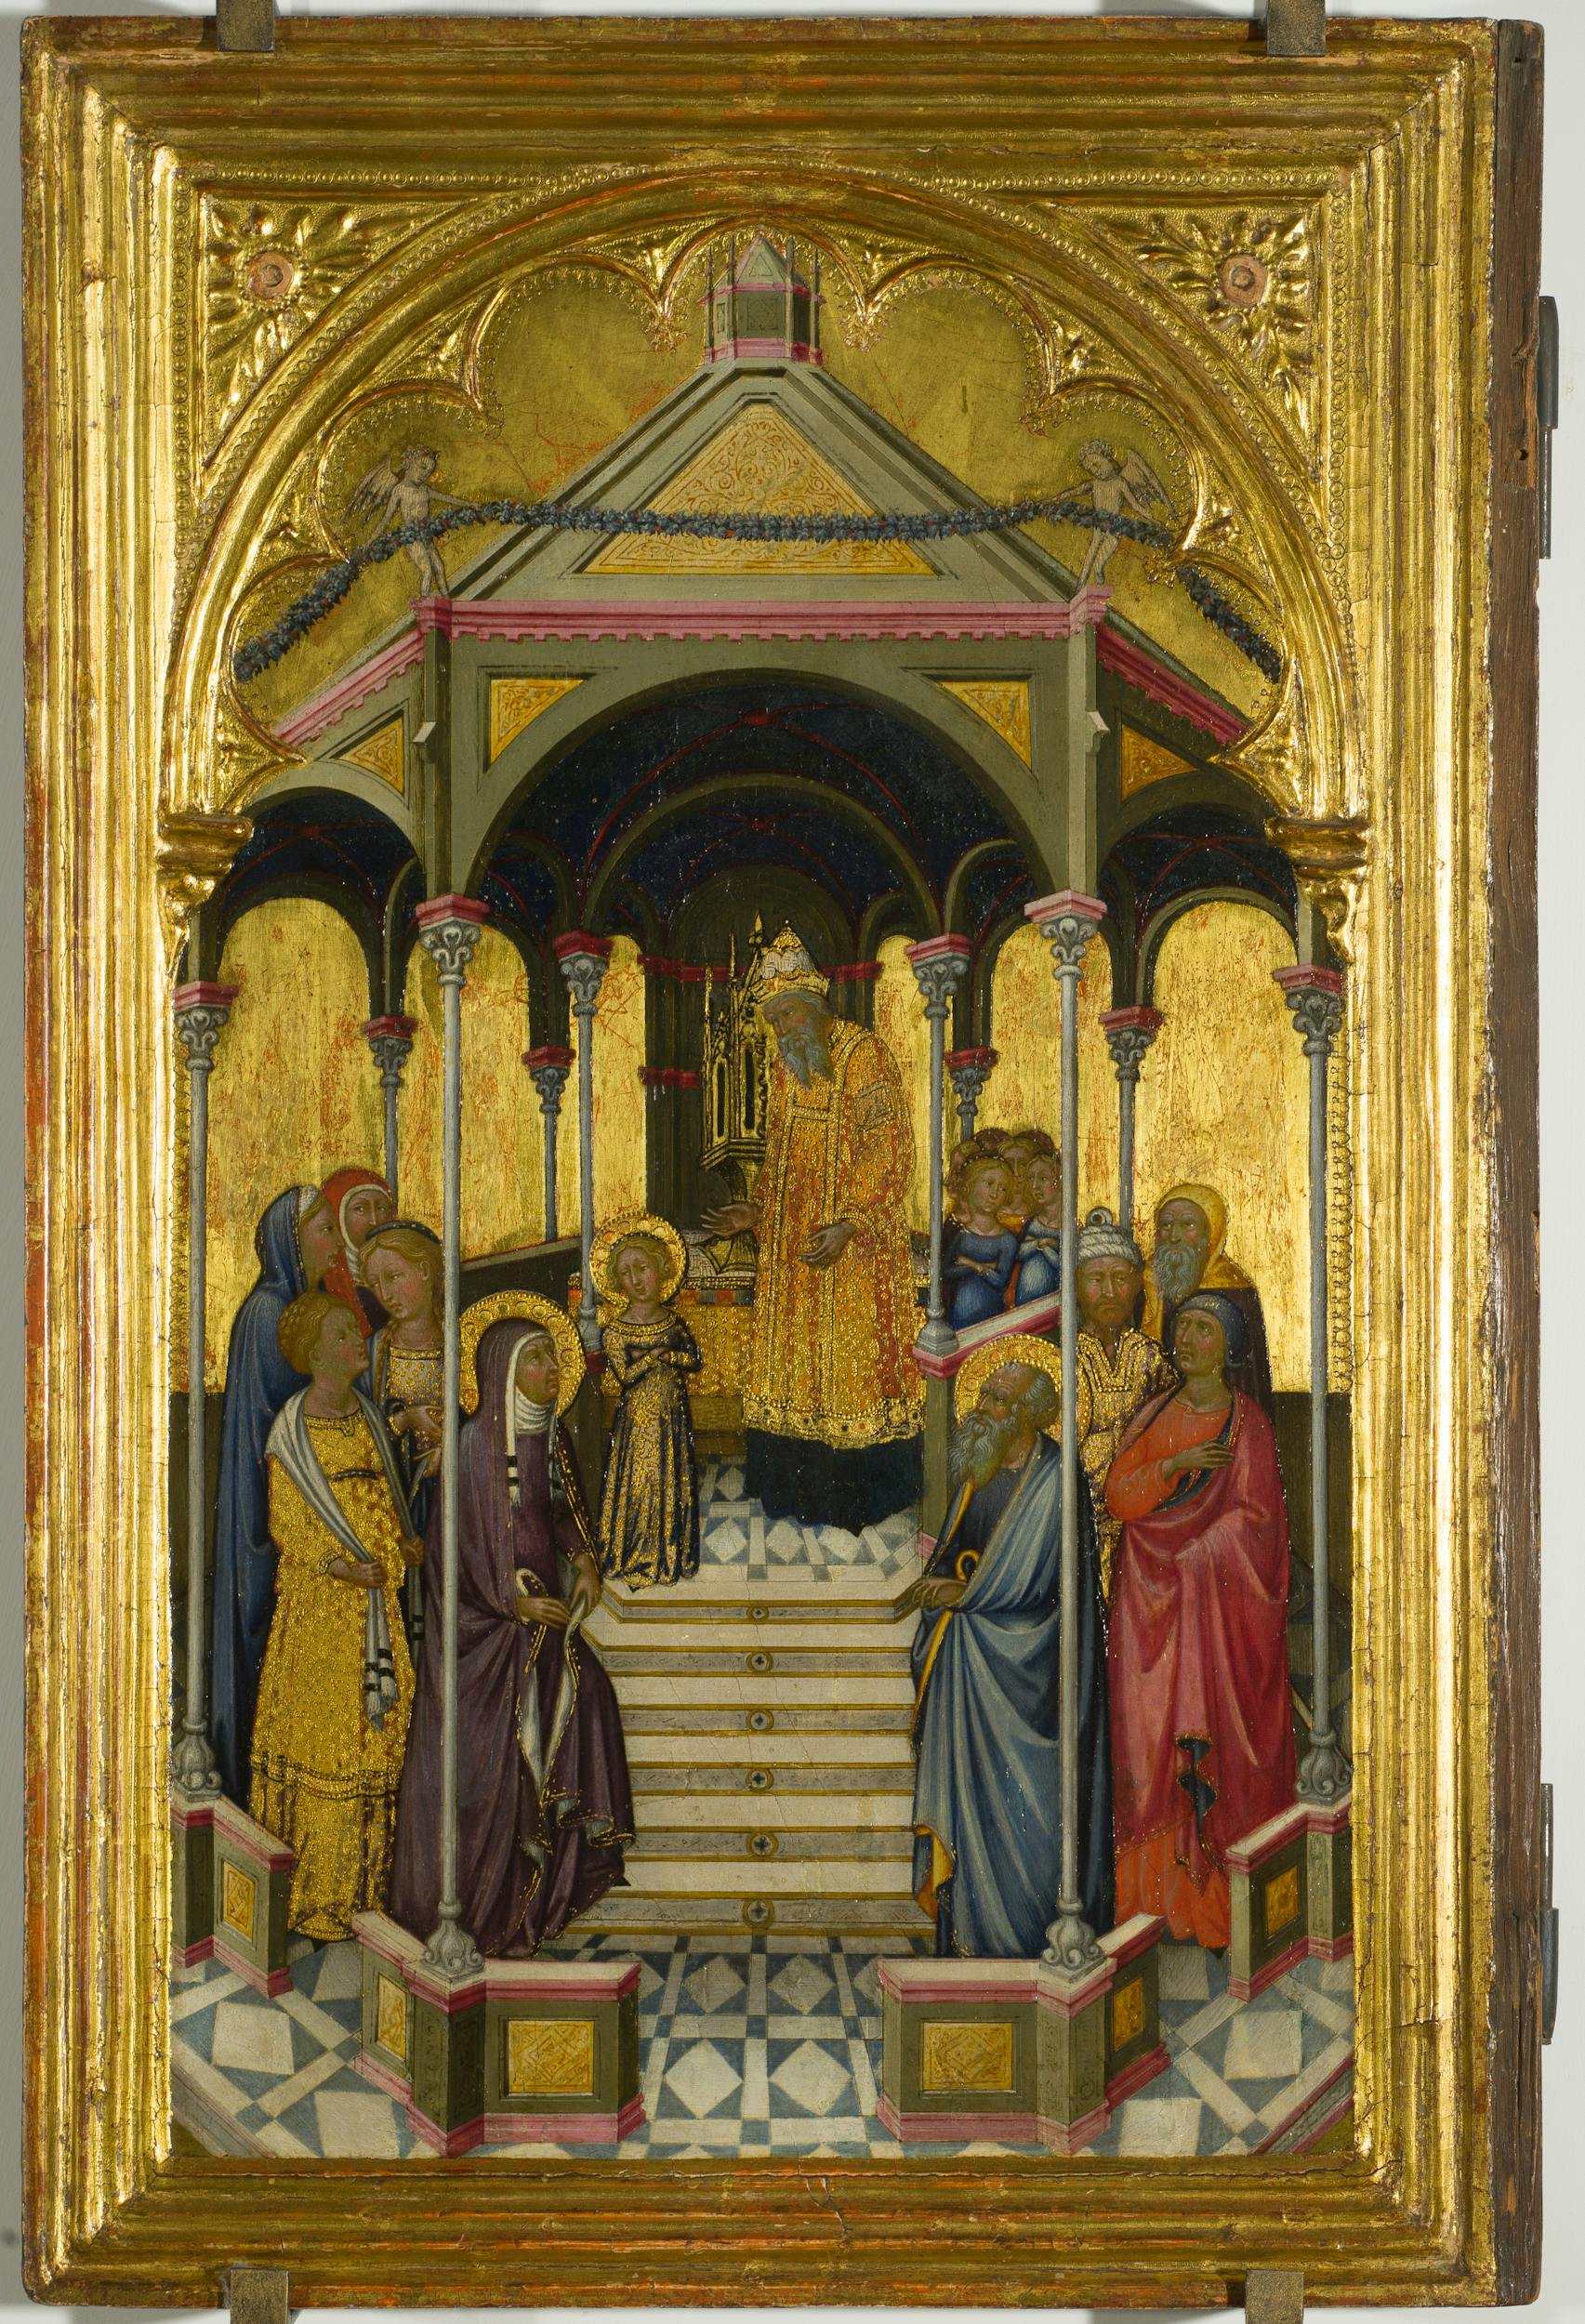 Presentazione della Vergine al tempio, Niccolò di Buonaccorso, 1380 ca., Uffizi | Presentation of the Virgin, Niccolò di Buonaccorso, 1380c., Uffizi